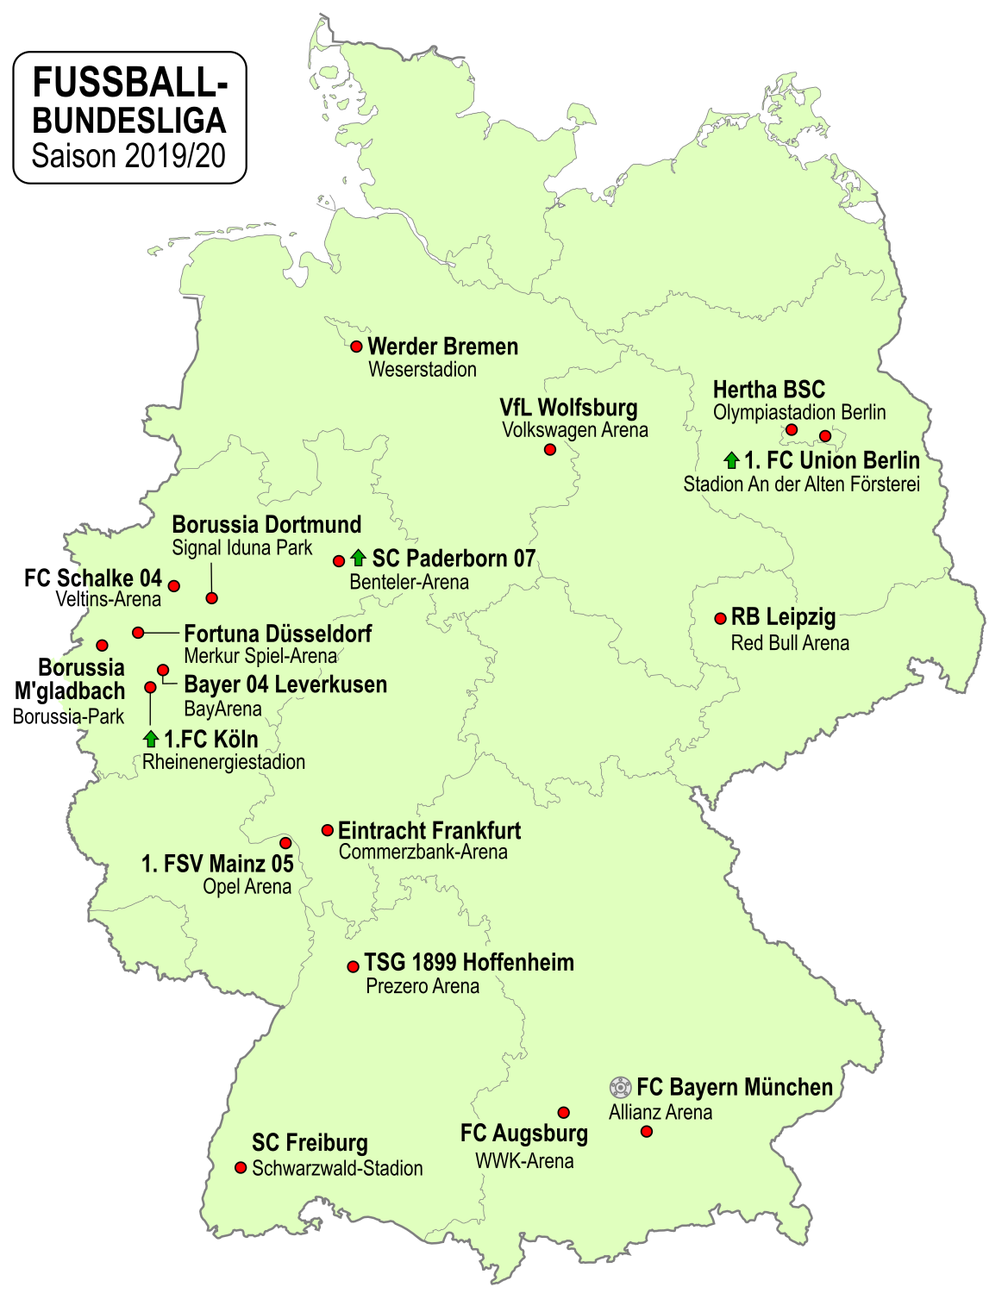 Teilnehmende Vereine der Bundesliga 2019/20